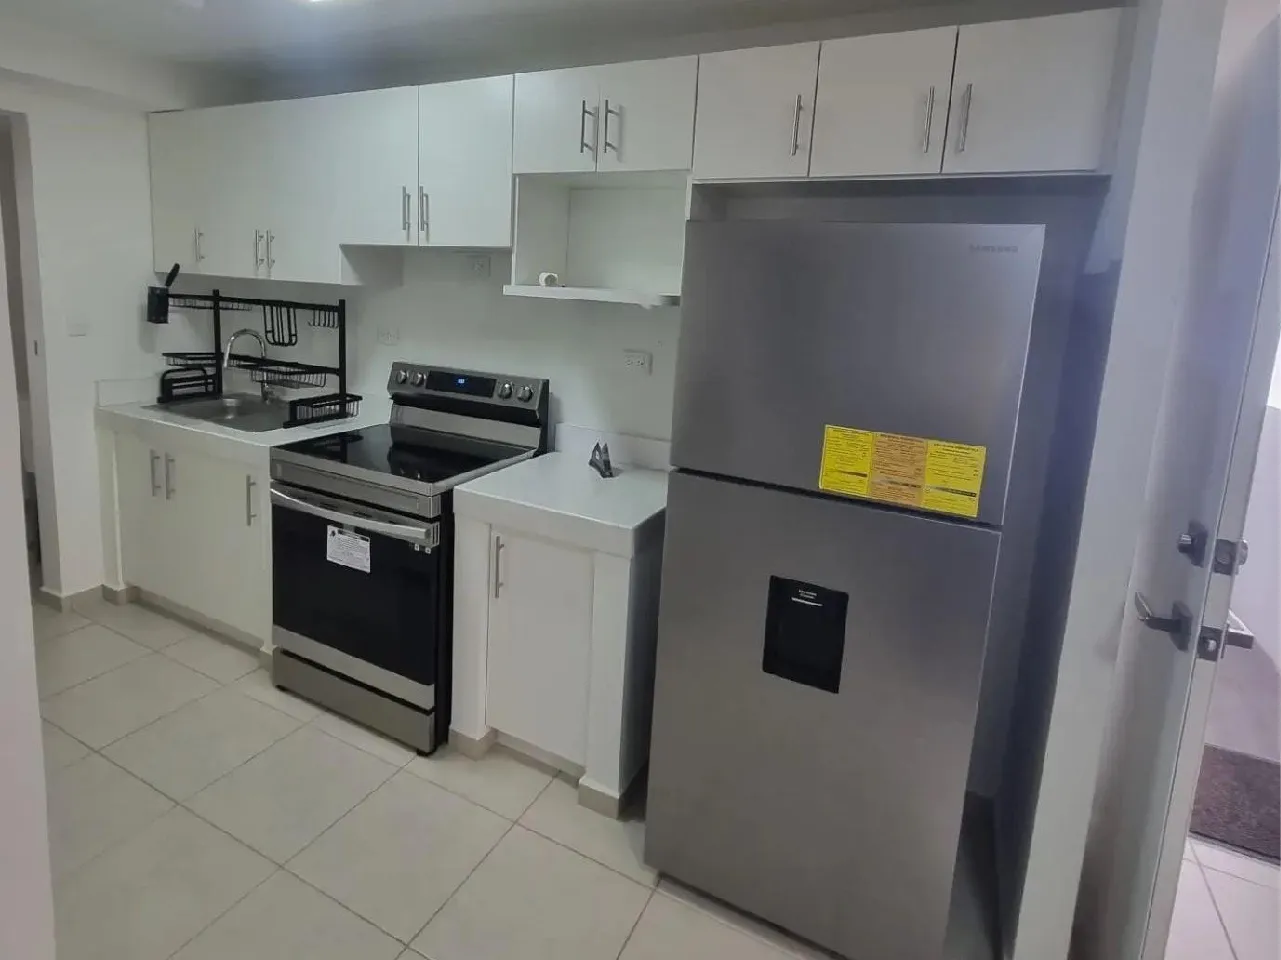 La cocina se encuentra totalmente equipada, cuenta con un refrigerador, estufa, escurridor de platos y muebles de color blanco.